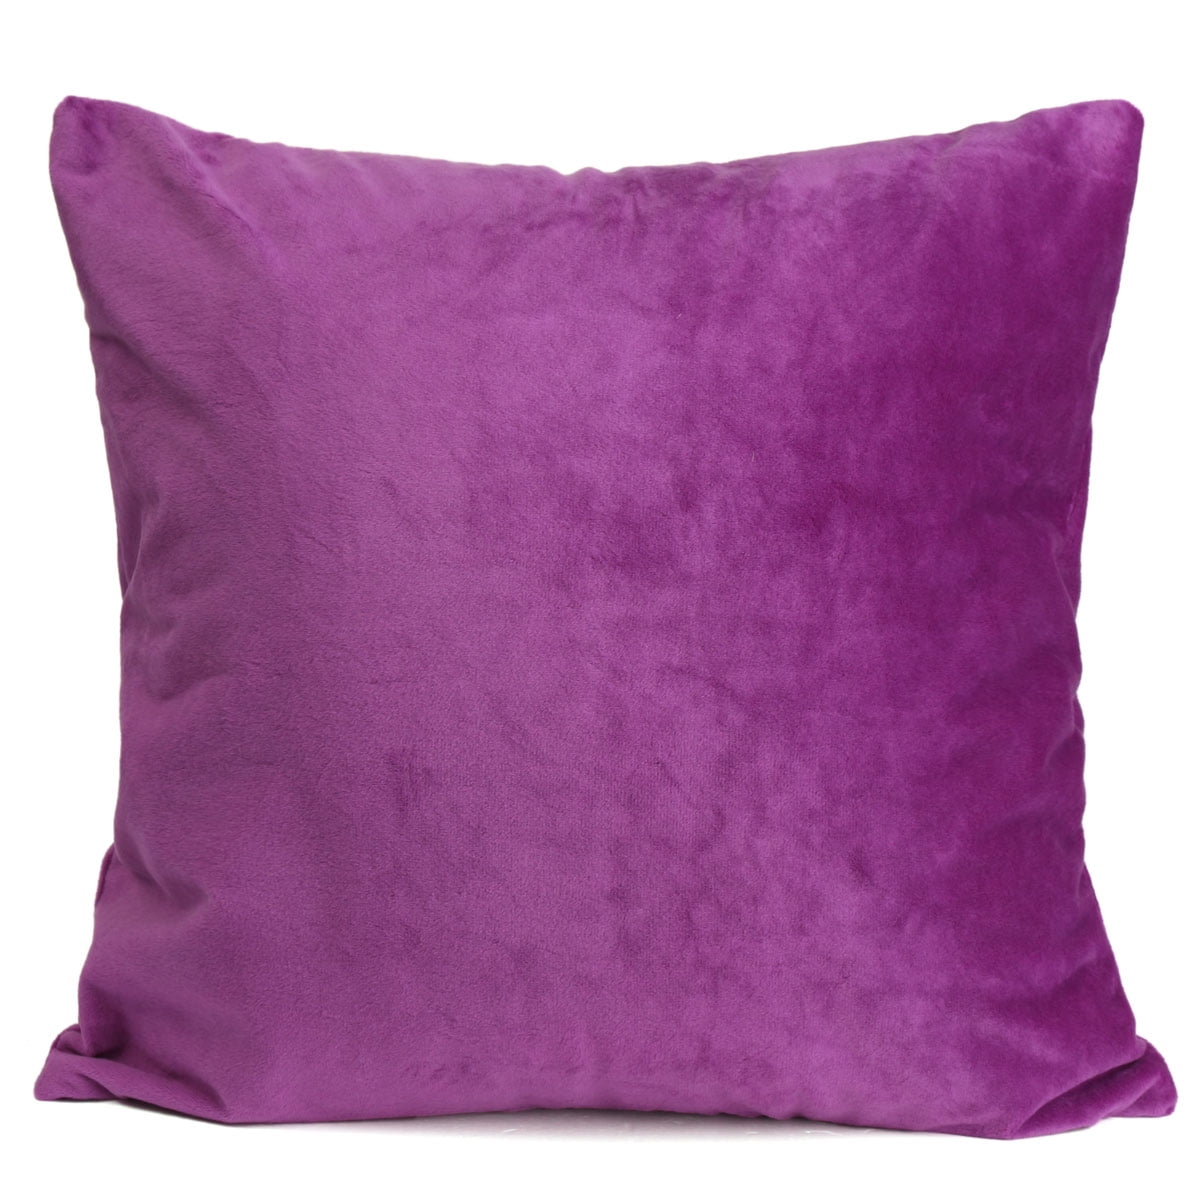 18'' Pillowcase purple pillow case sofa waist throw cushion cover Home Decor 